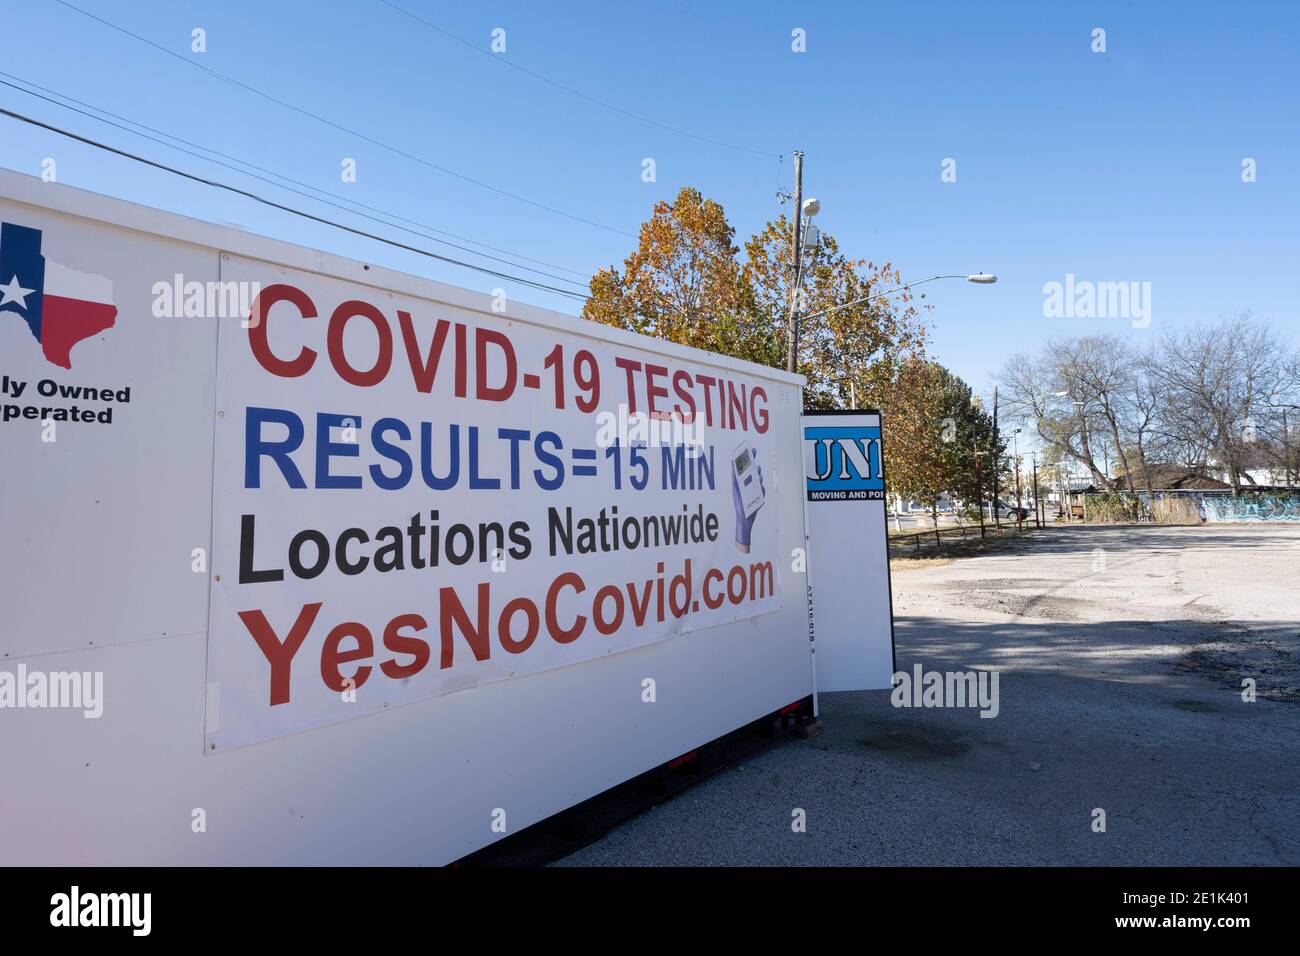 Ein tragbarer Container dient als gewinnorientiertes COVID-19-Testgelände in Ost-Austin, Texas, wo die Pandemie fast ein Jahr nach ihrer Entdeckung in den USA weiter wütet. Die Tests kosten ca. 125 US-Dollar und dauern 15 Minuten für die Ergebnisse. Stockfoto